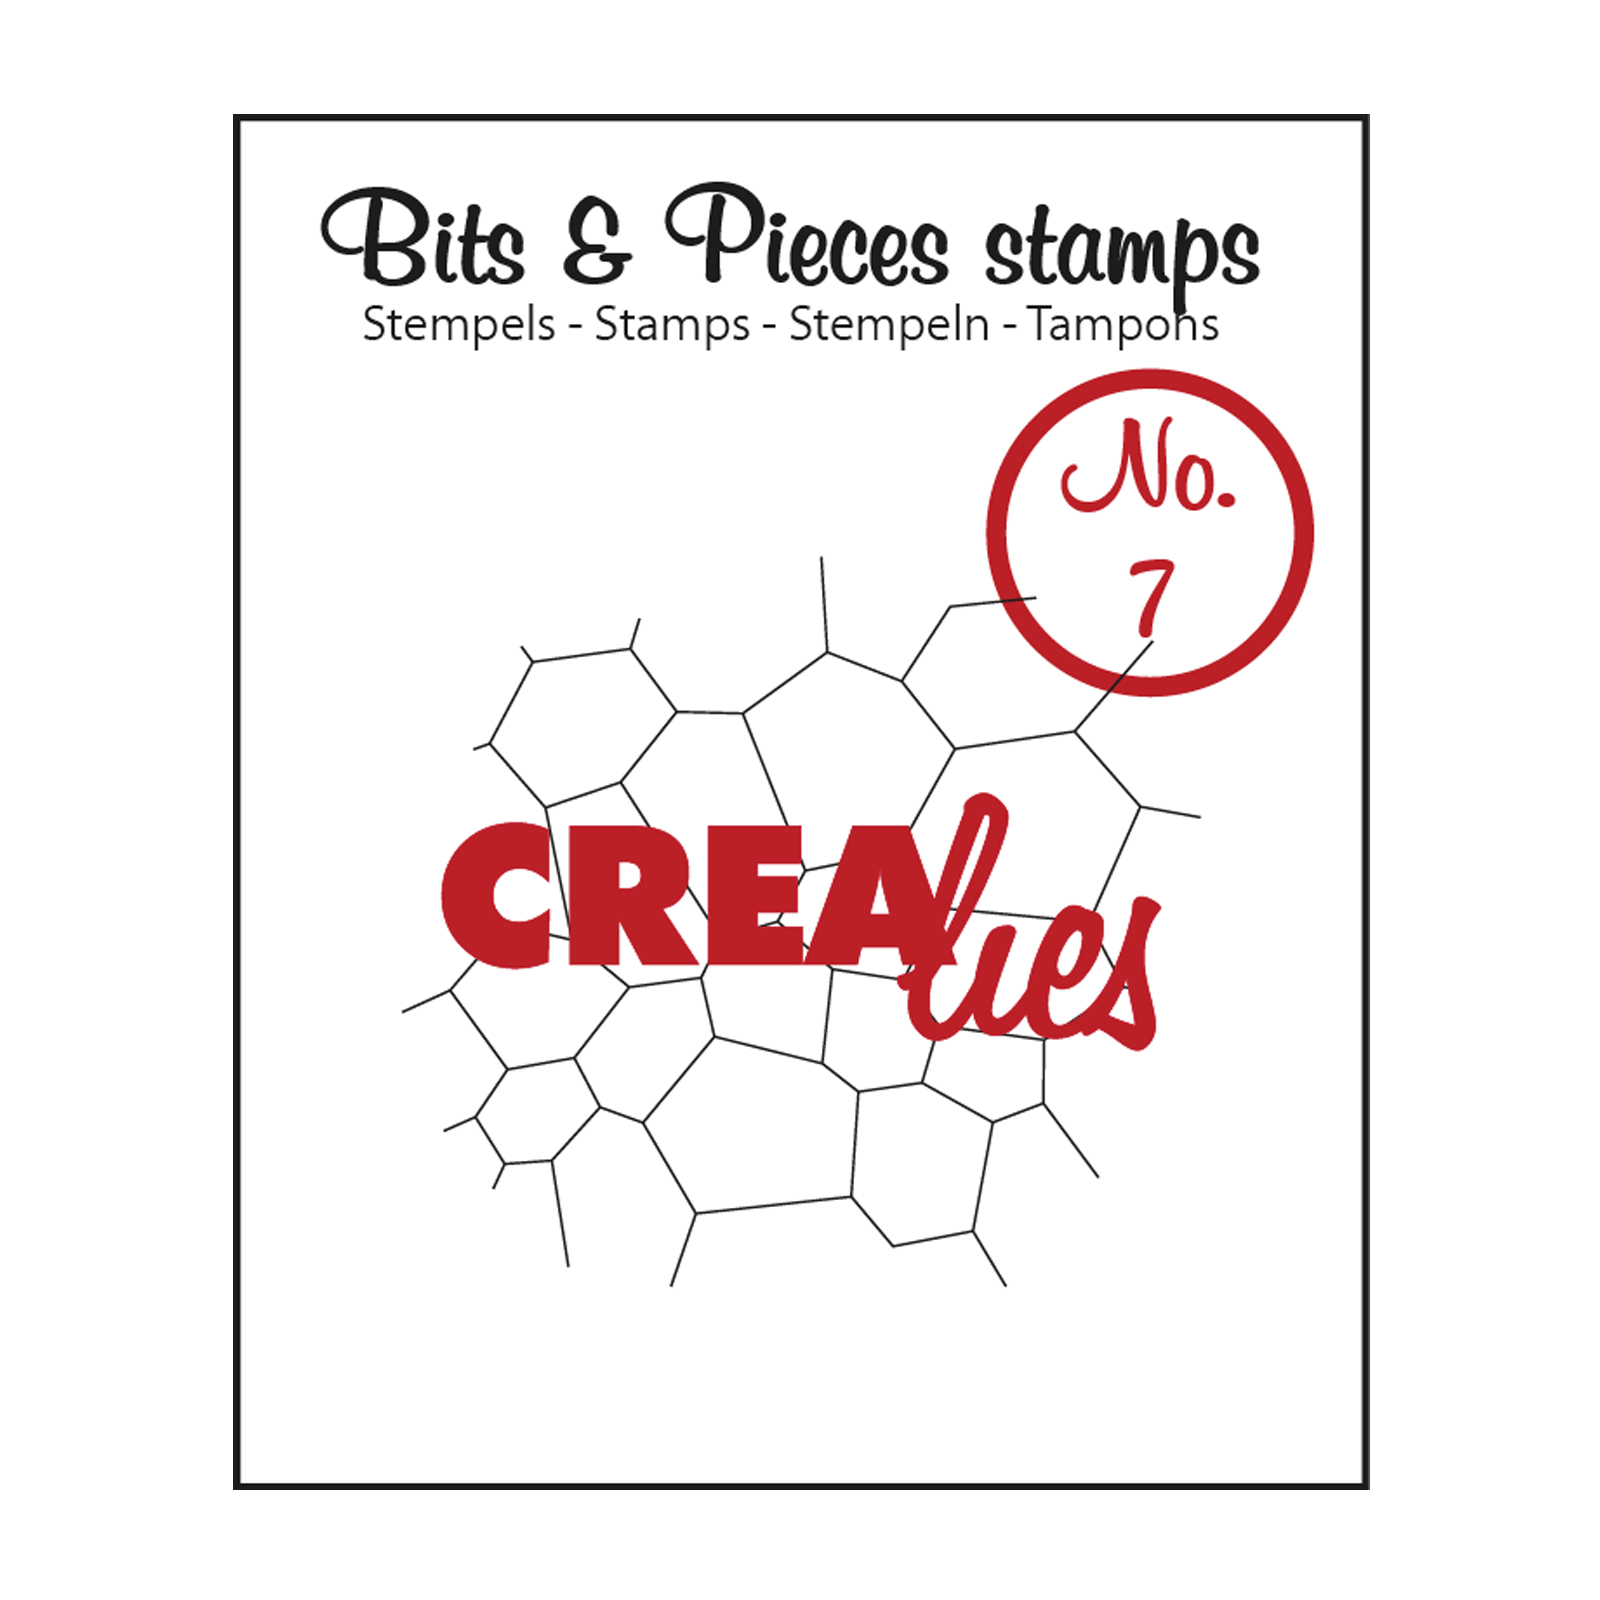 Crealies • Bits & Pieces tampon No.7 Thin mosaic